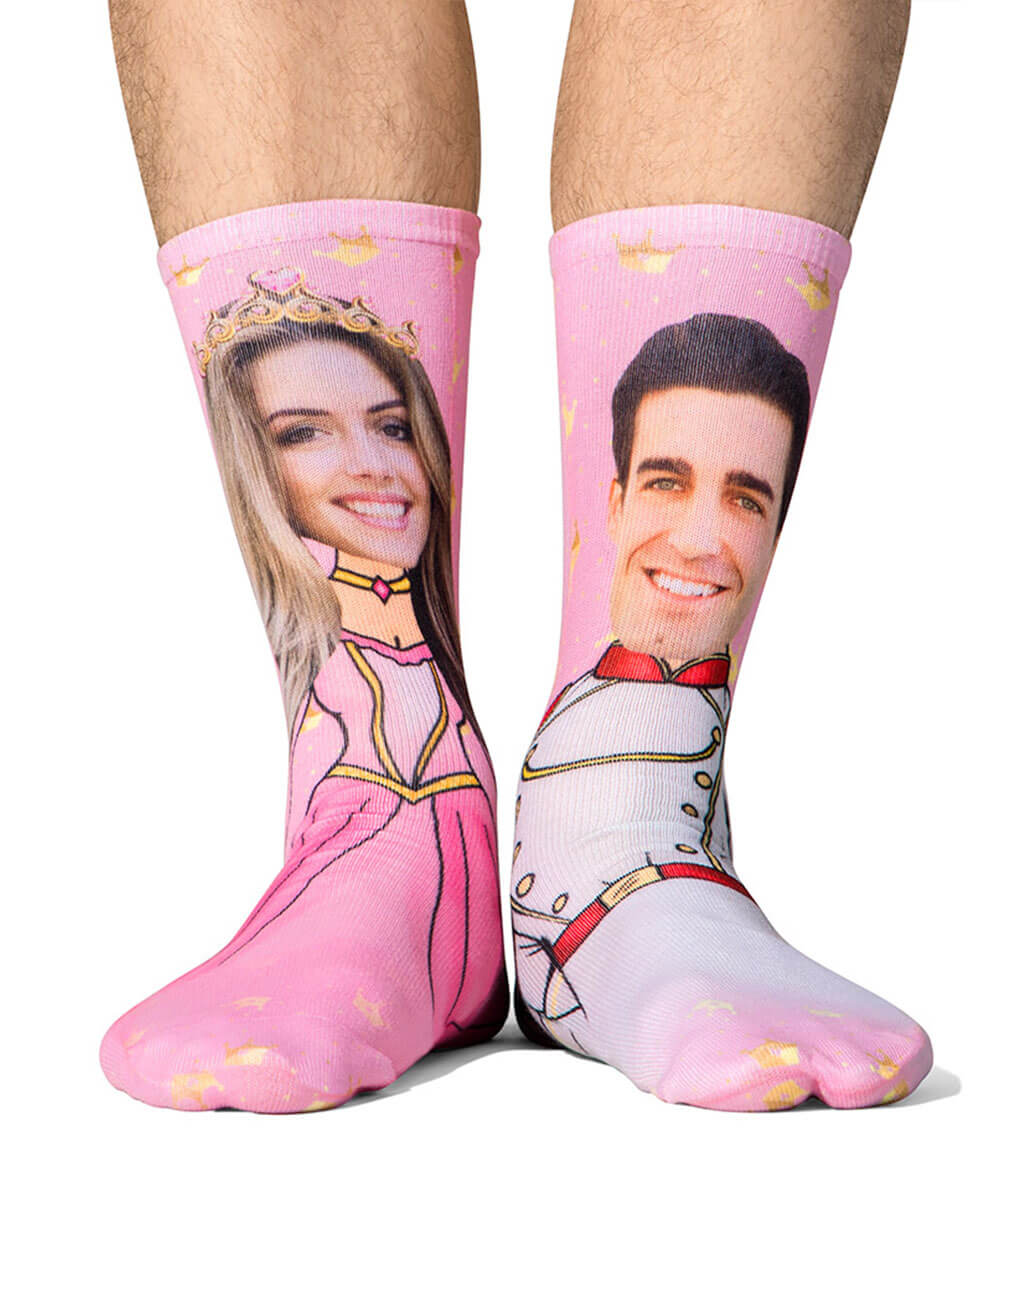 Prince & Princess Me Custom Socks